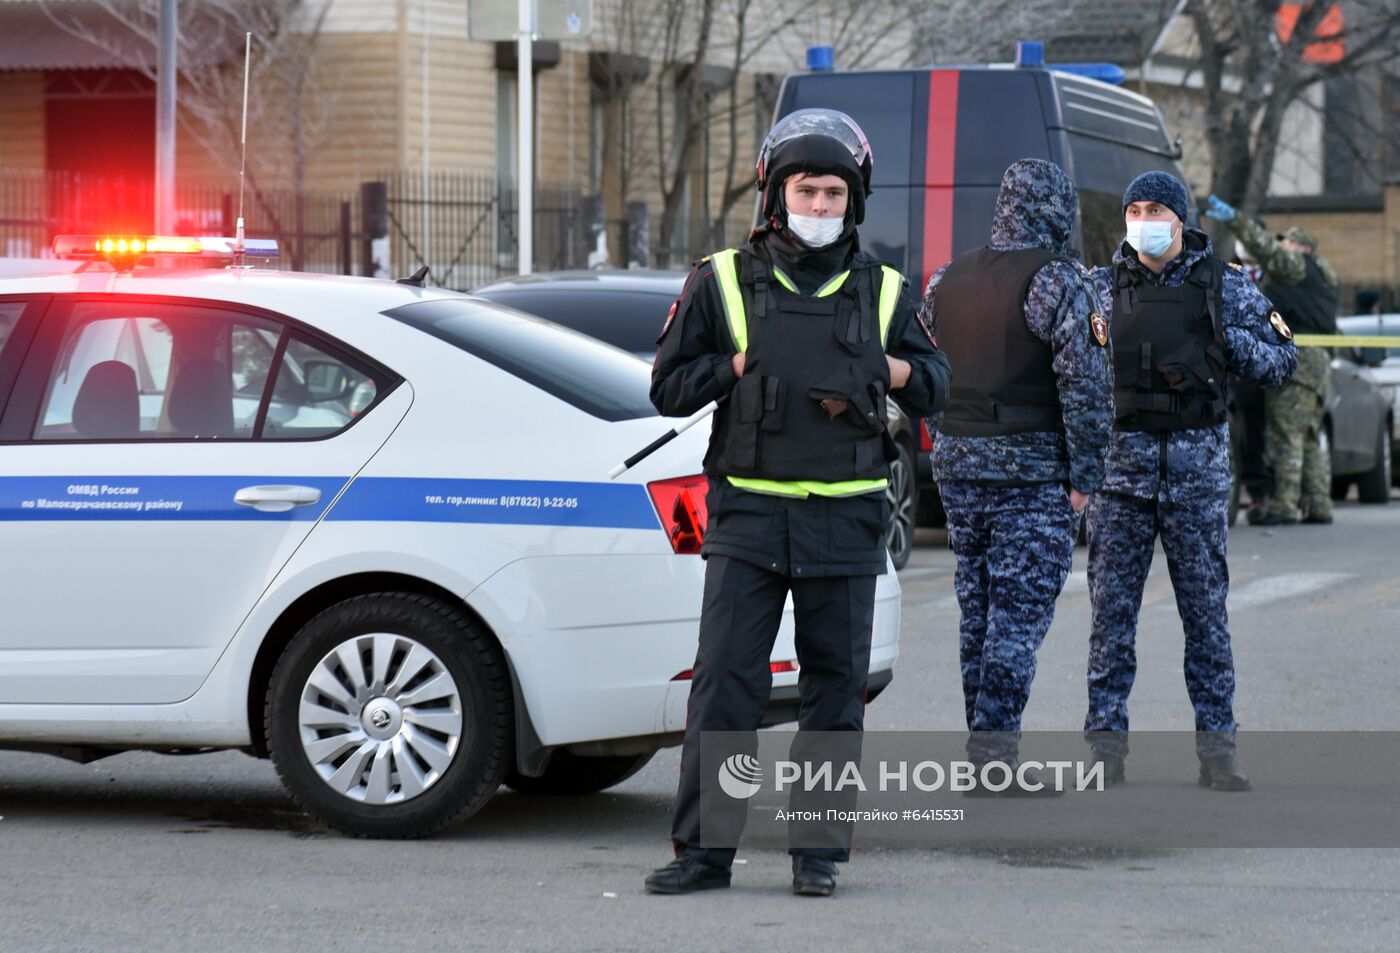  В Карачаево-Черкесии боевик совершил самопродрыв при попытке задержания